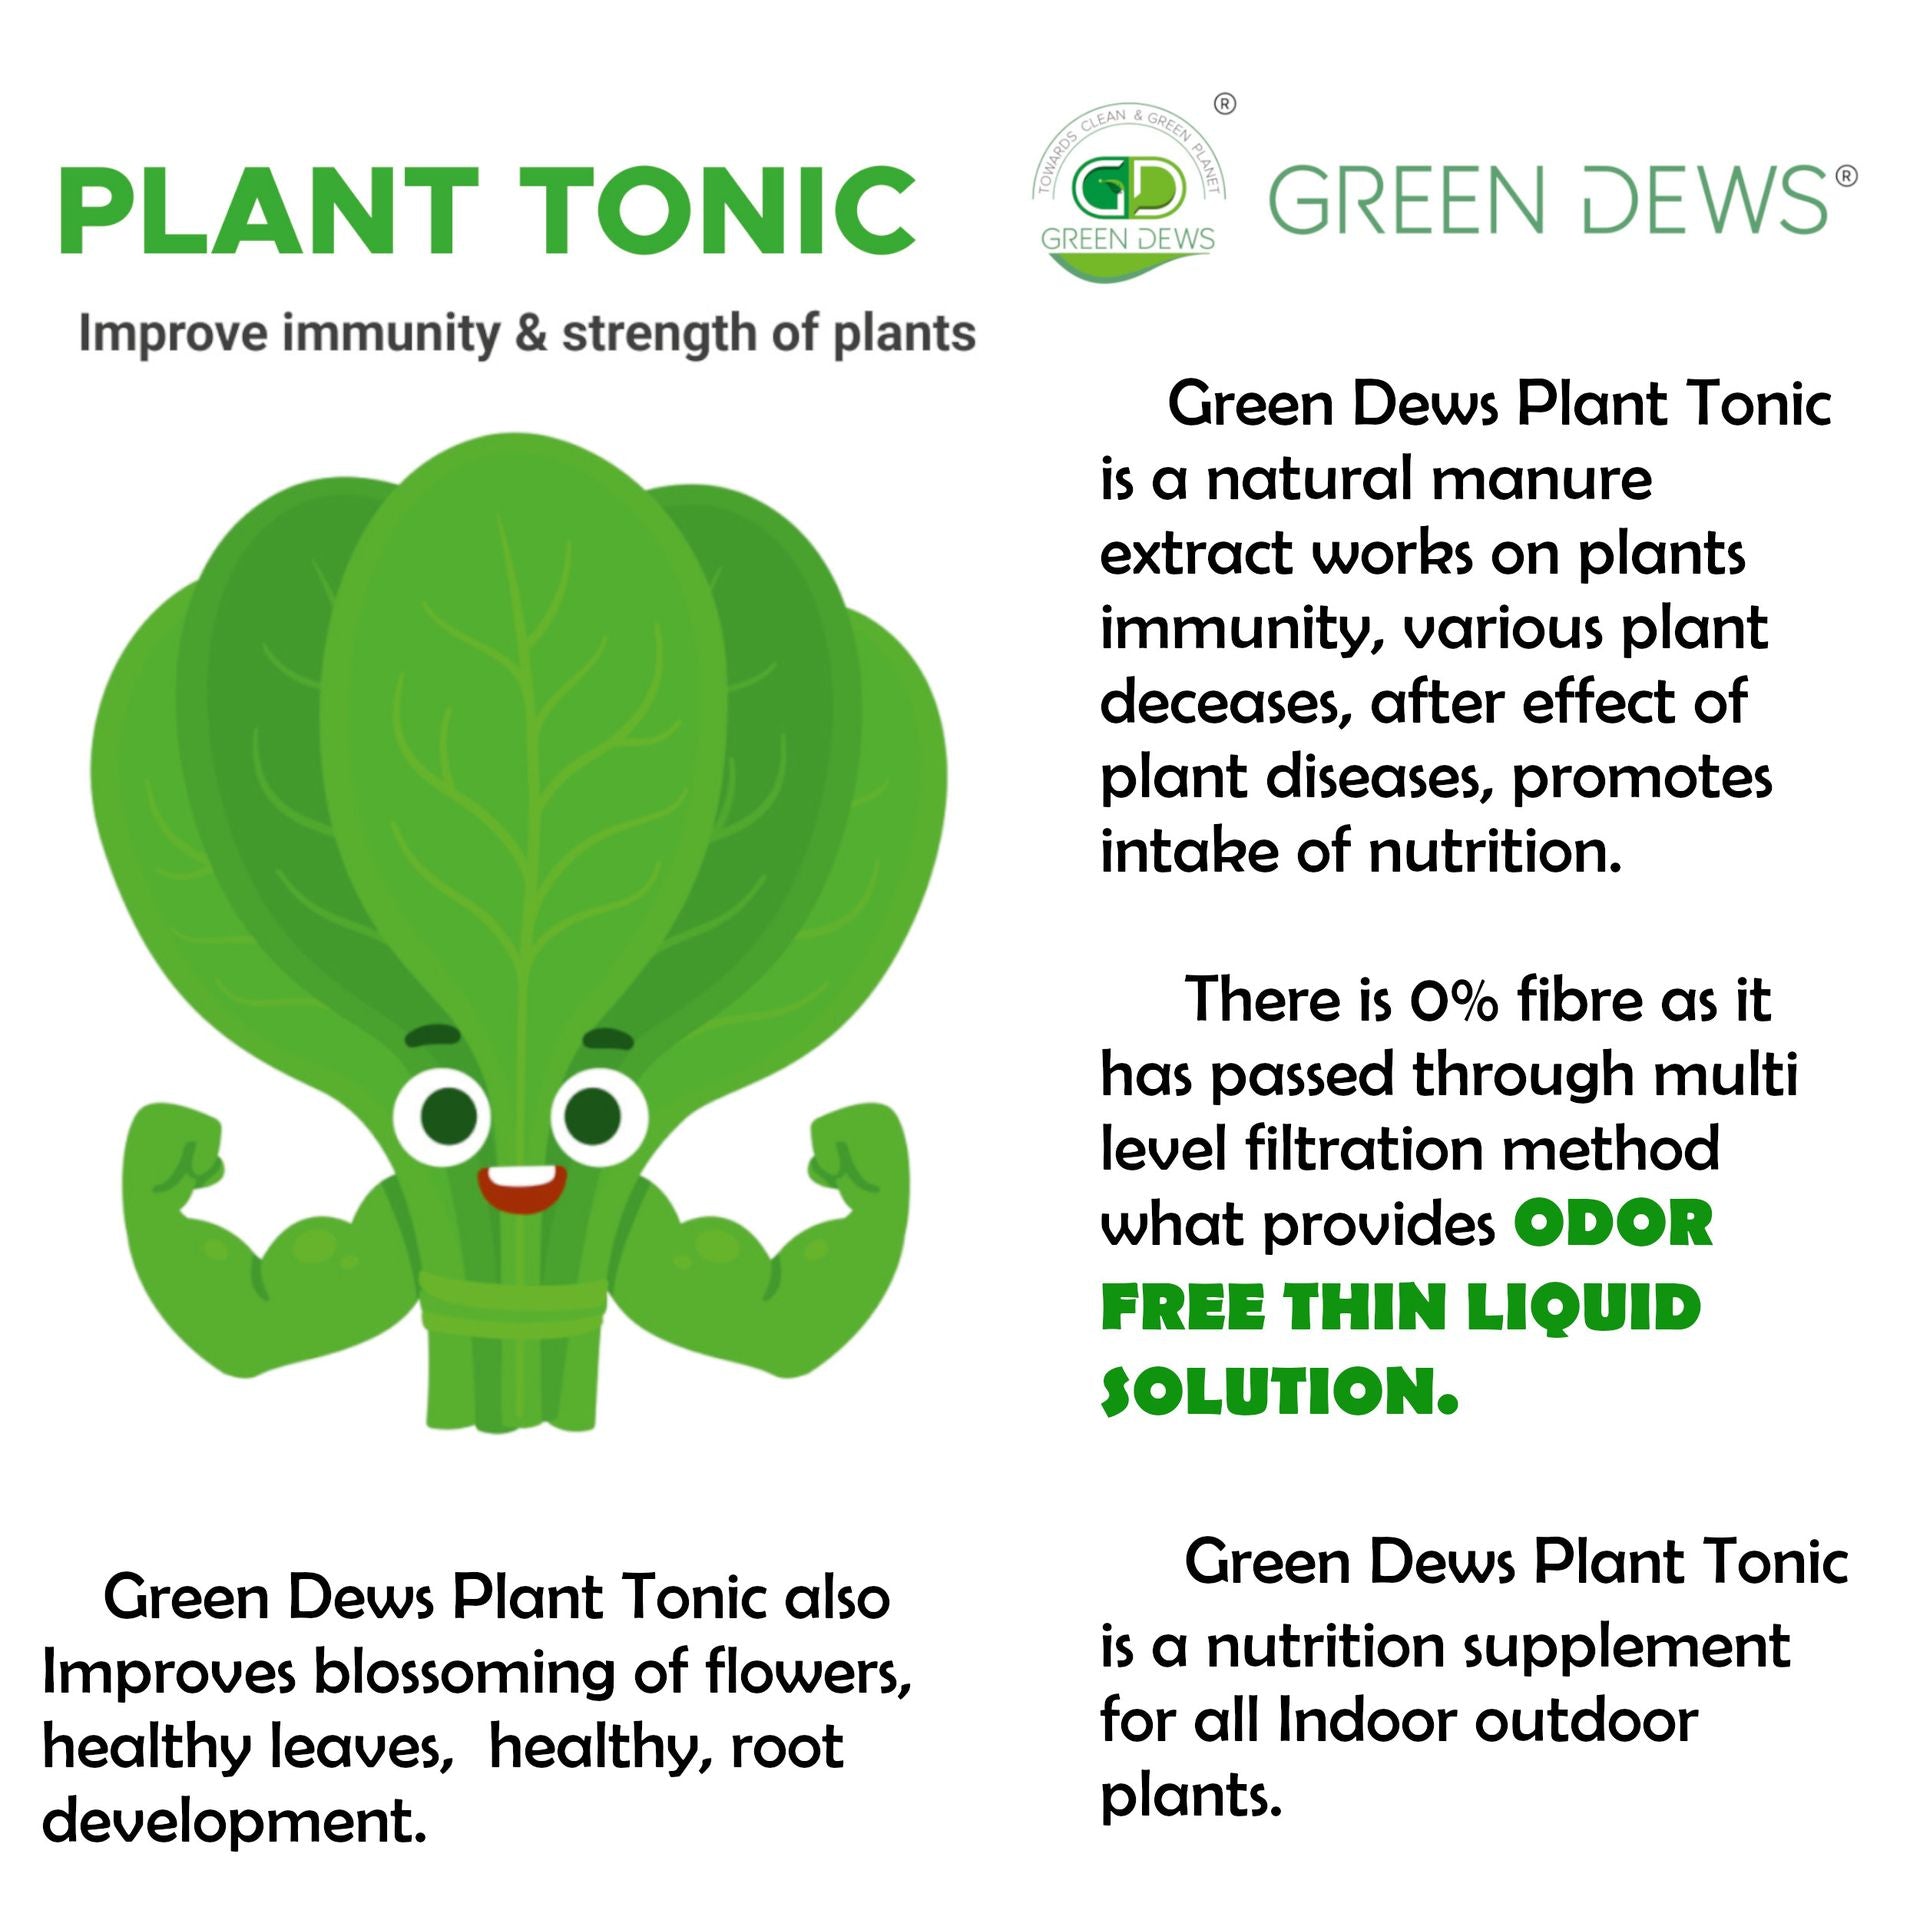 Green Dews Plant Tonic All Purpose Plant Food Fertilizer Liquid Organic Controls Plant Diseases - hfnl!fe